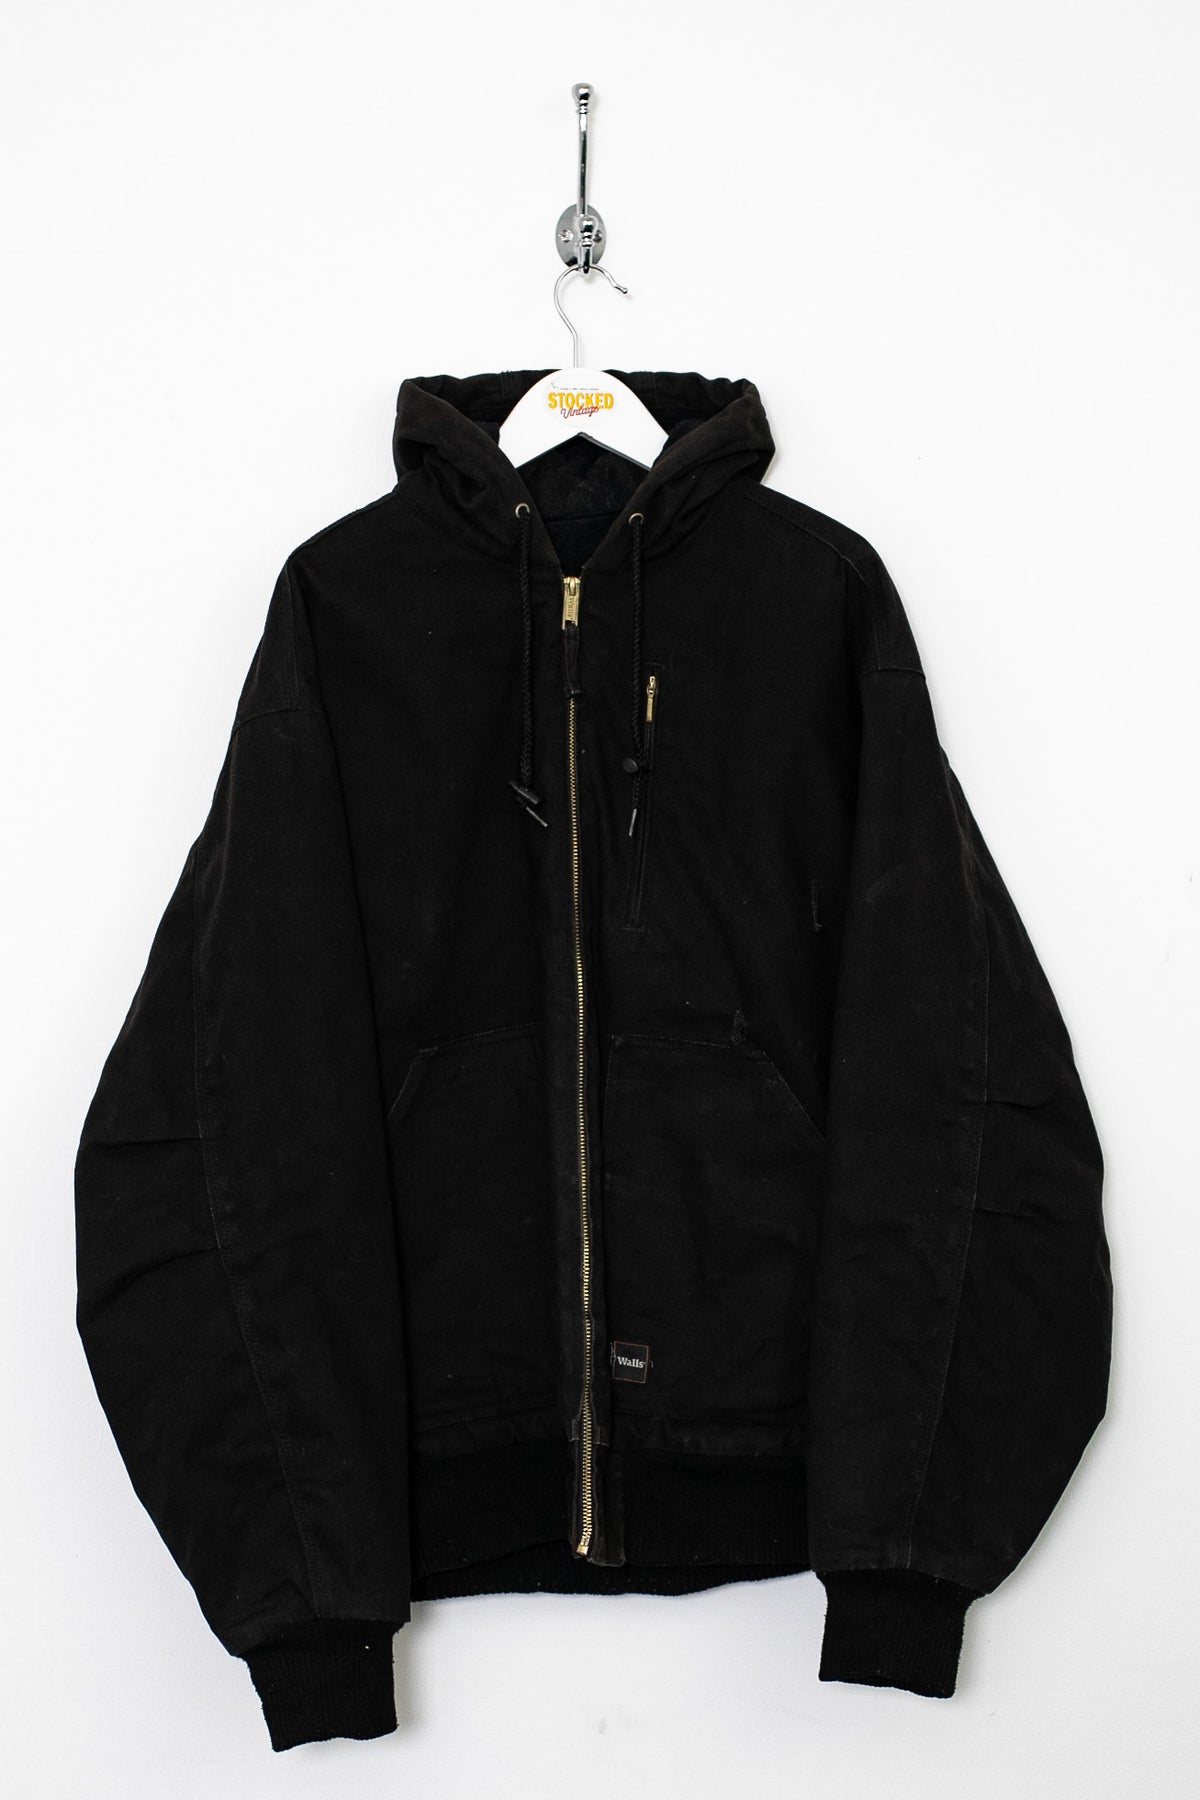 00s Walls Workwear Jacket (L)